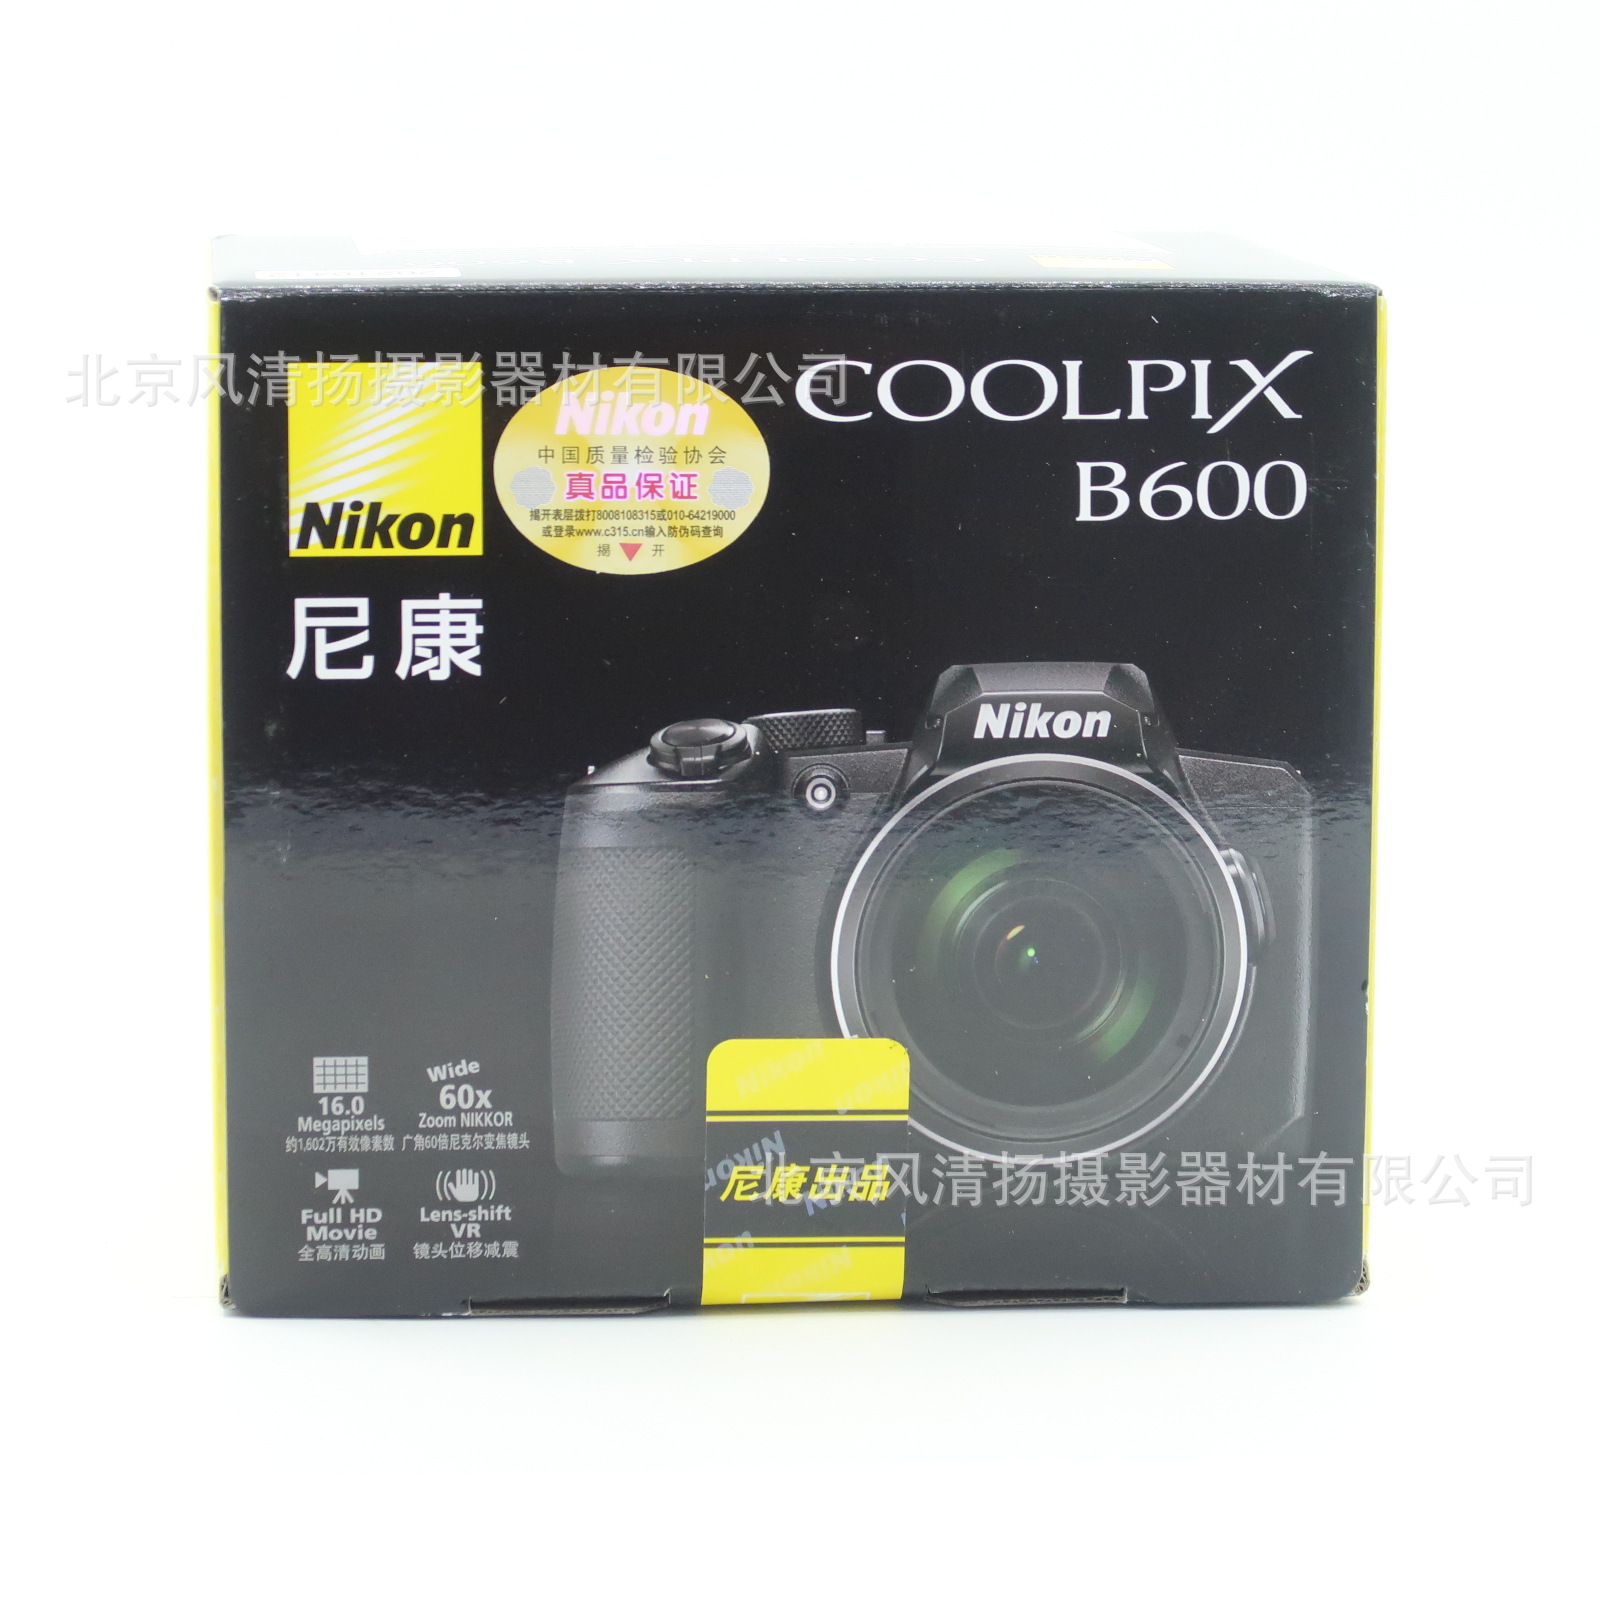 尼康 Coolpix B600 60倍长焦数码相机 适用24-1440mm 1602万像素